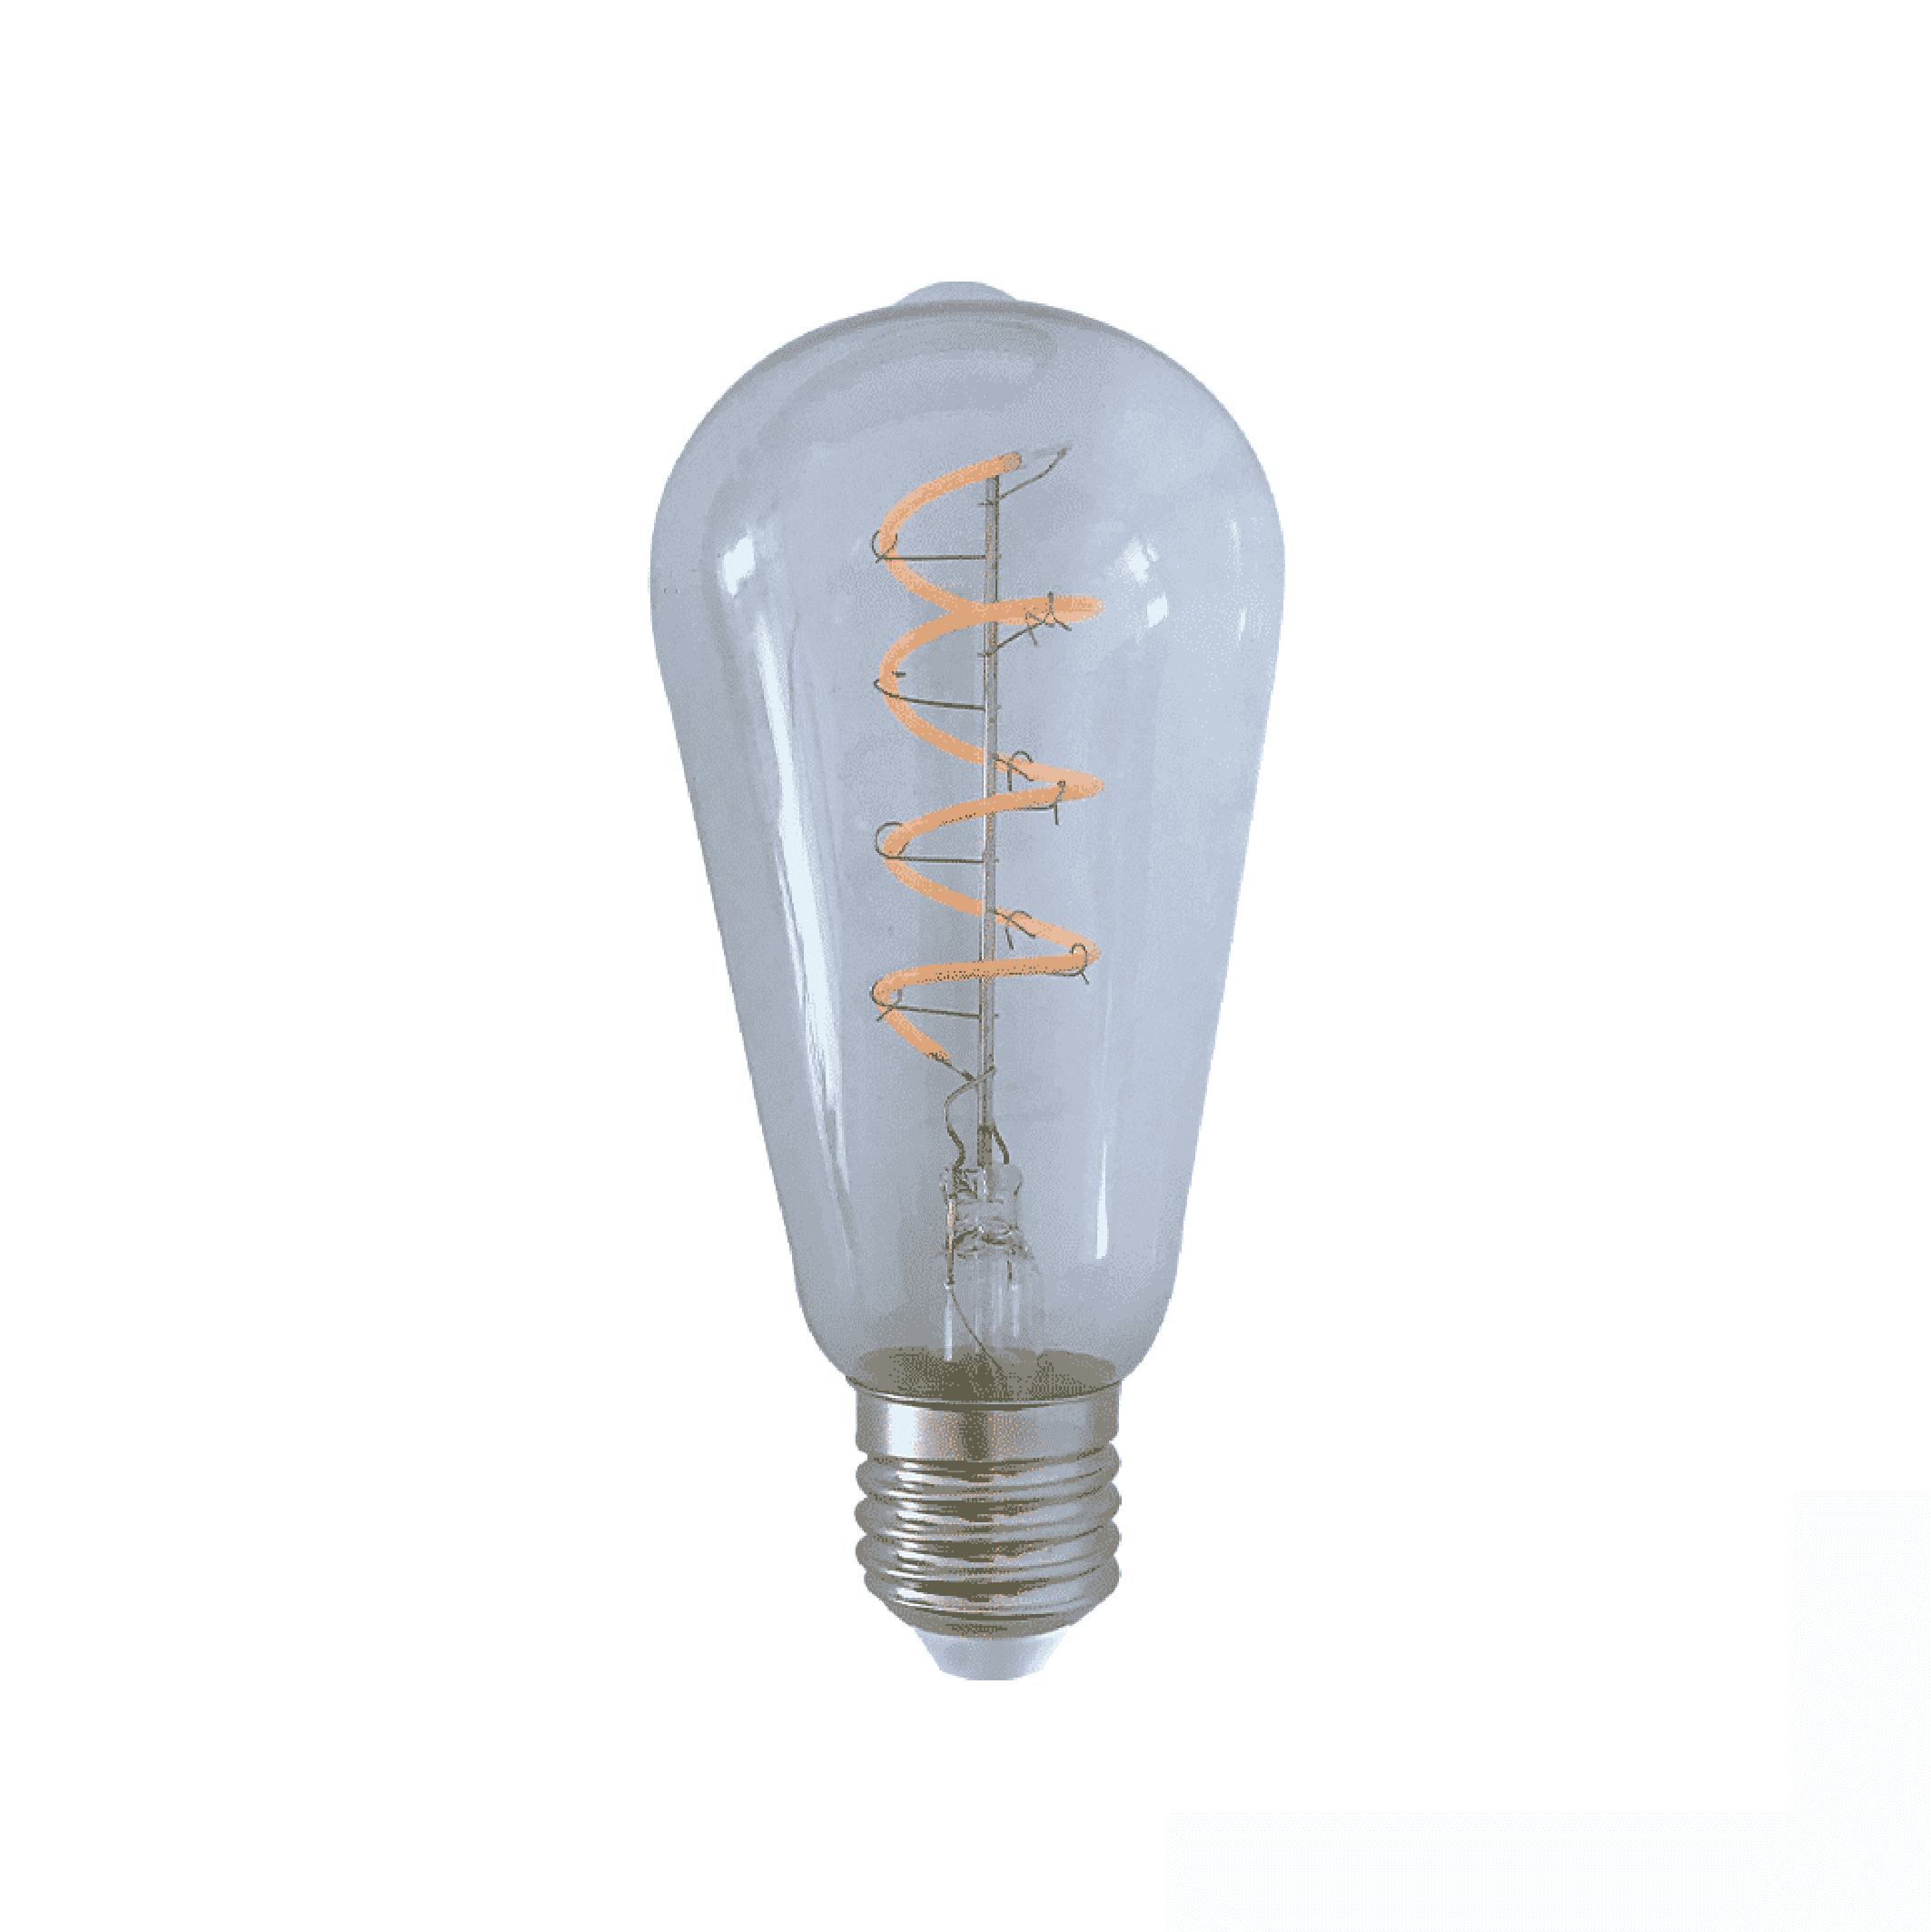 Interactie gaan beslissen Speel E27 LED lamp edison helder | 4 Watt - WilroLighting